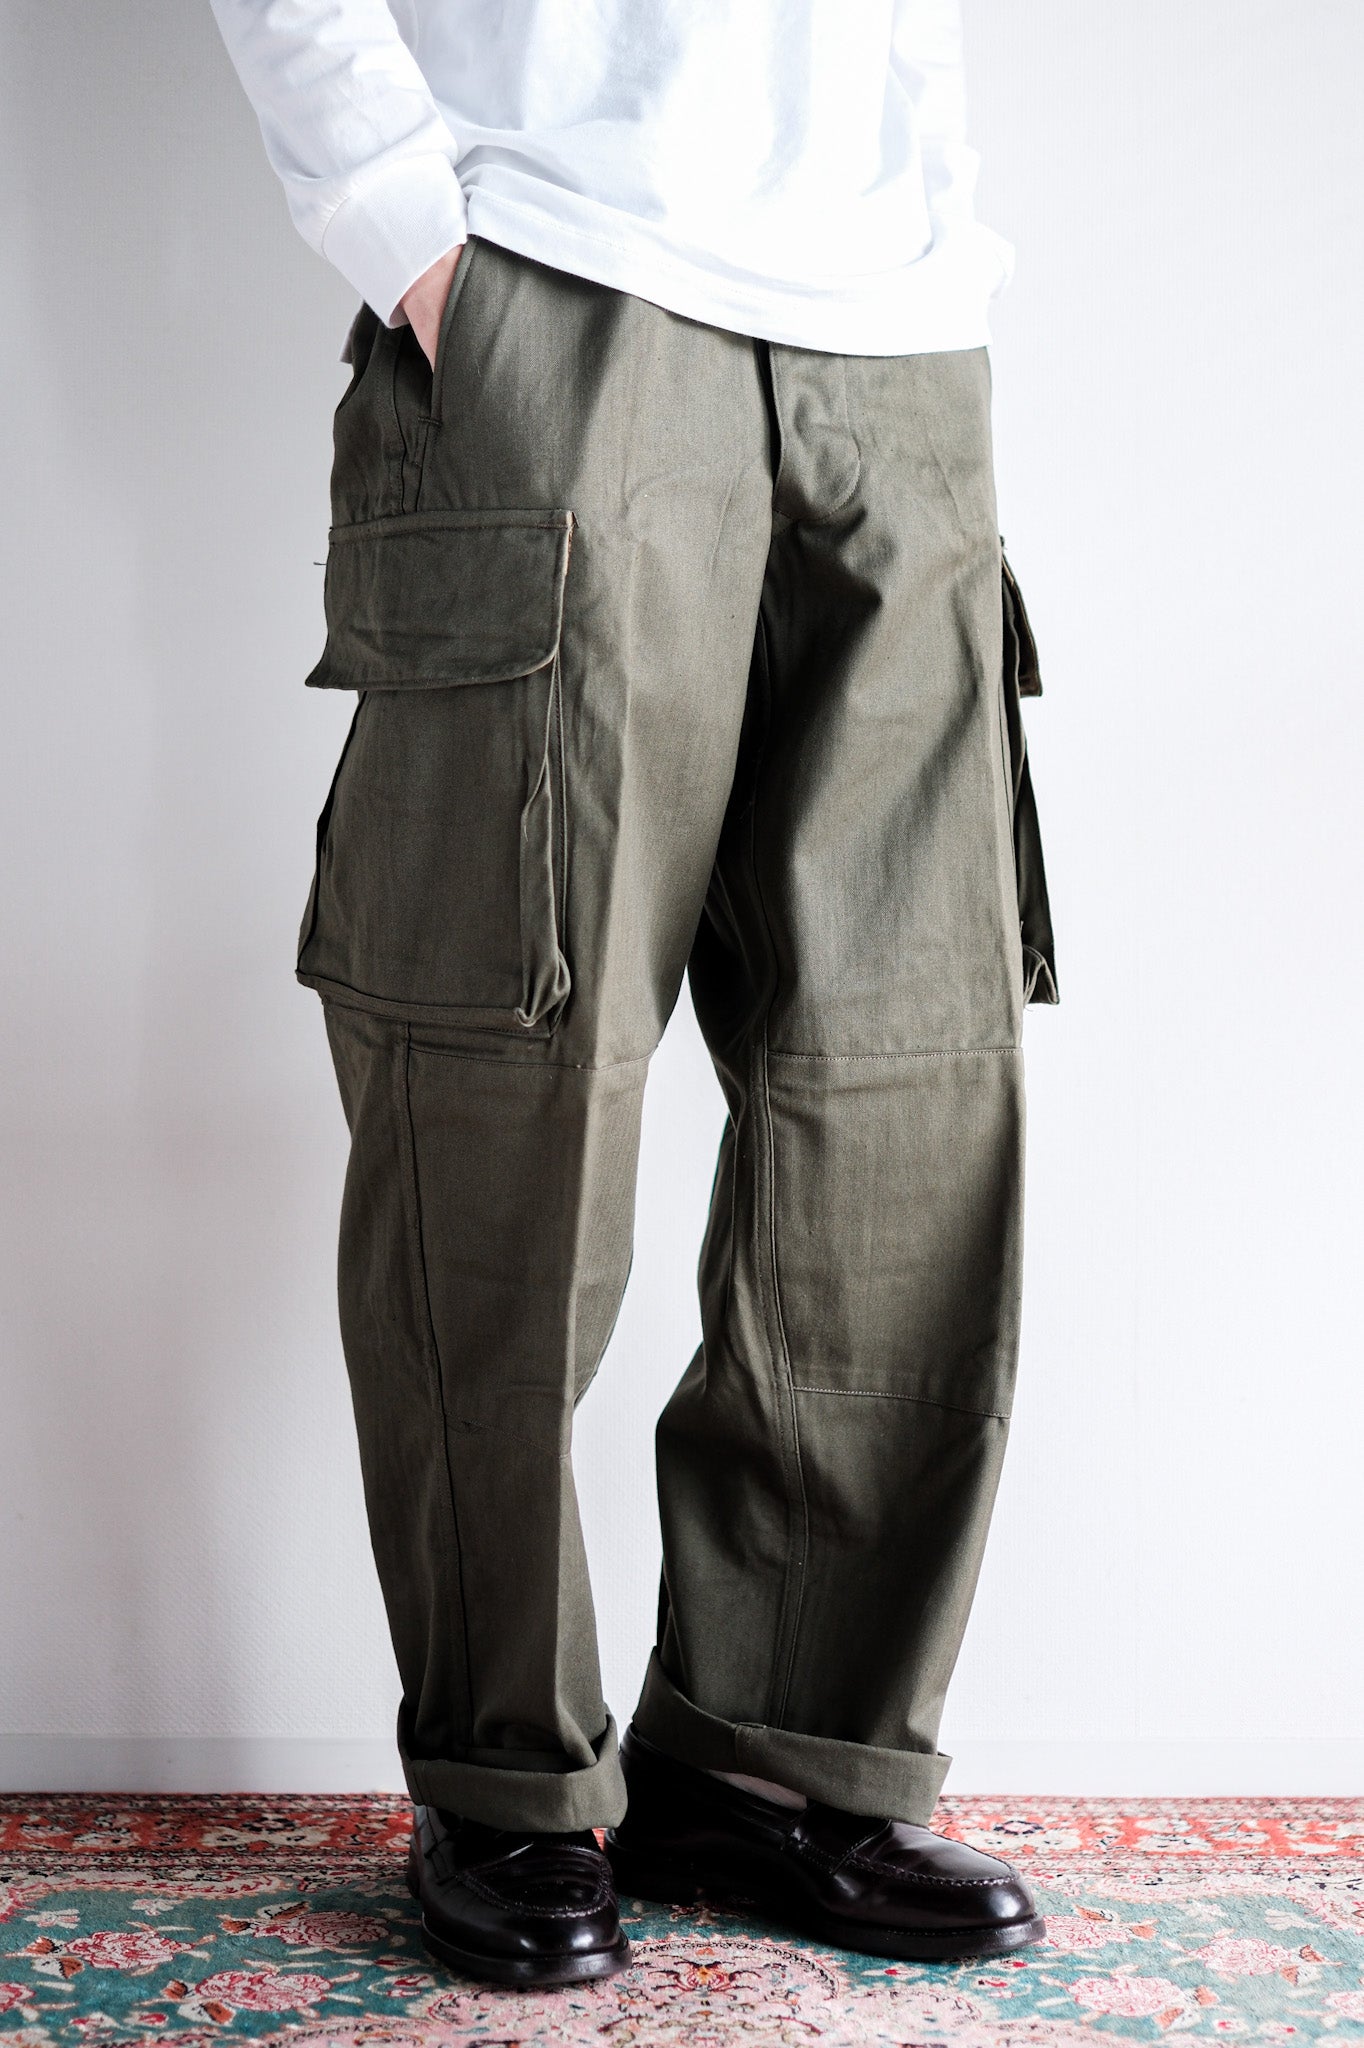 [〜60年代]法國陸軍M47野外褲子大小。21“死庫存”